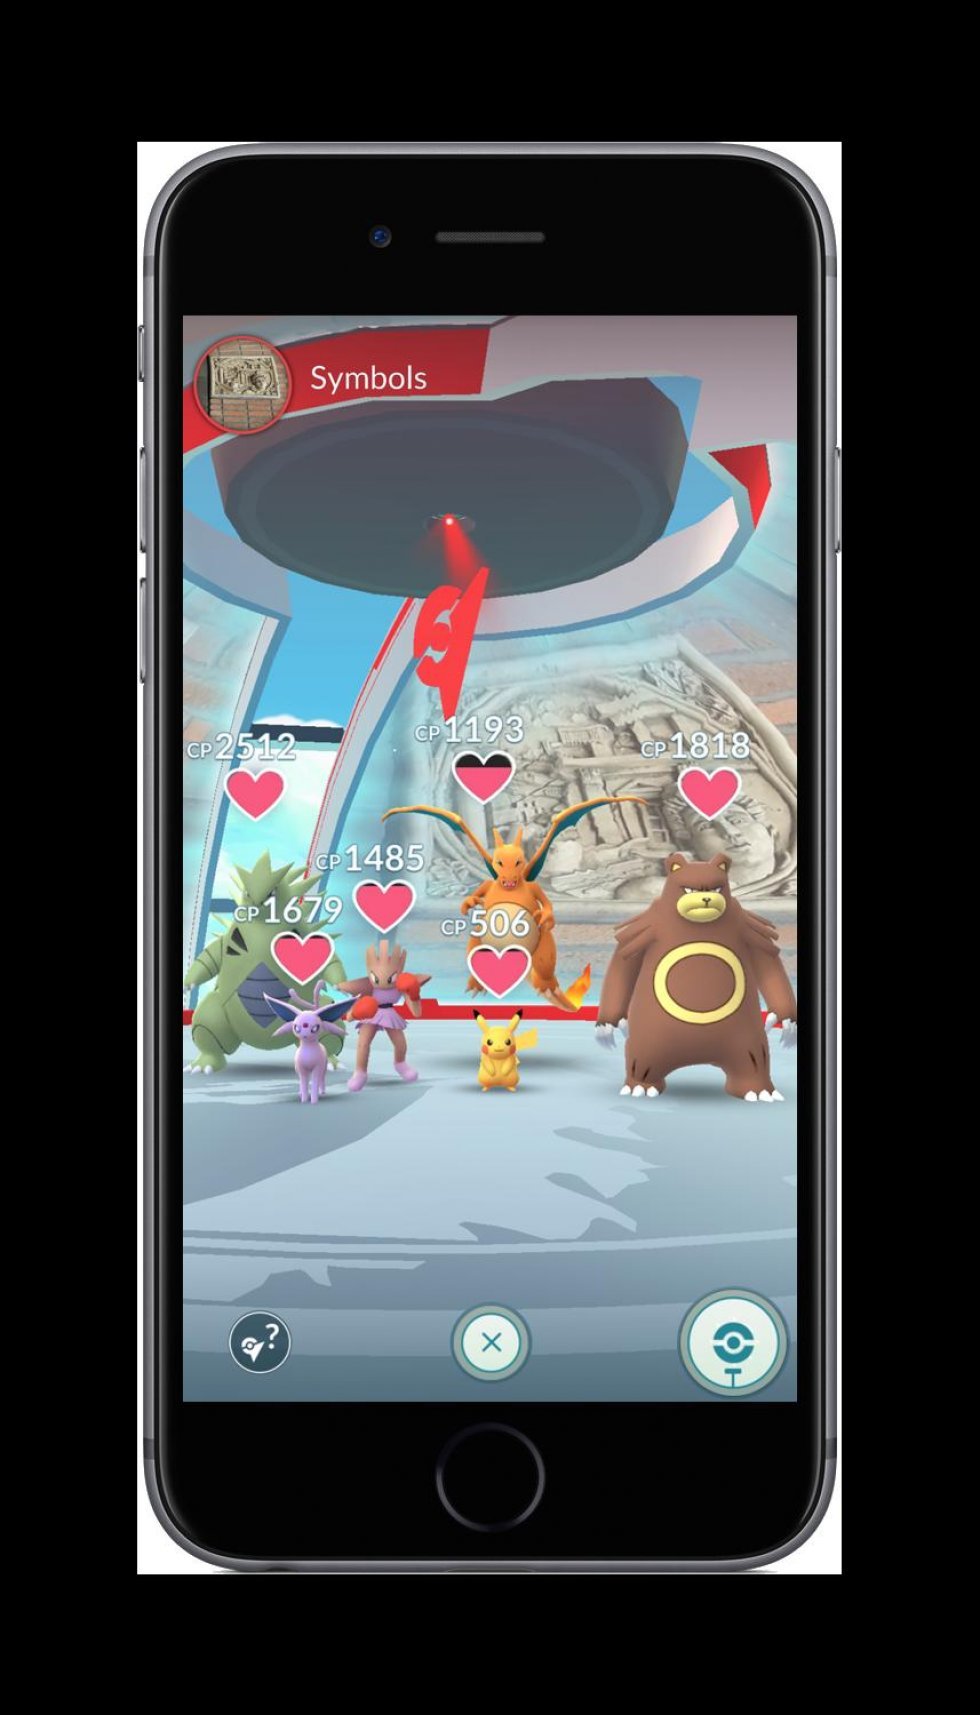 Her er alle de geniale nye funktioner i Pokémon GO